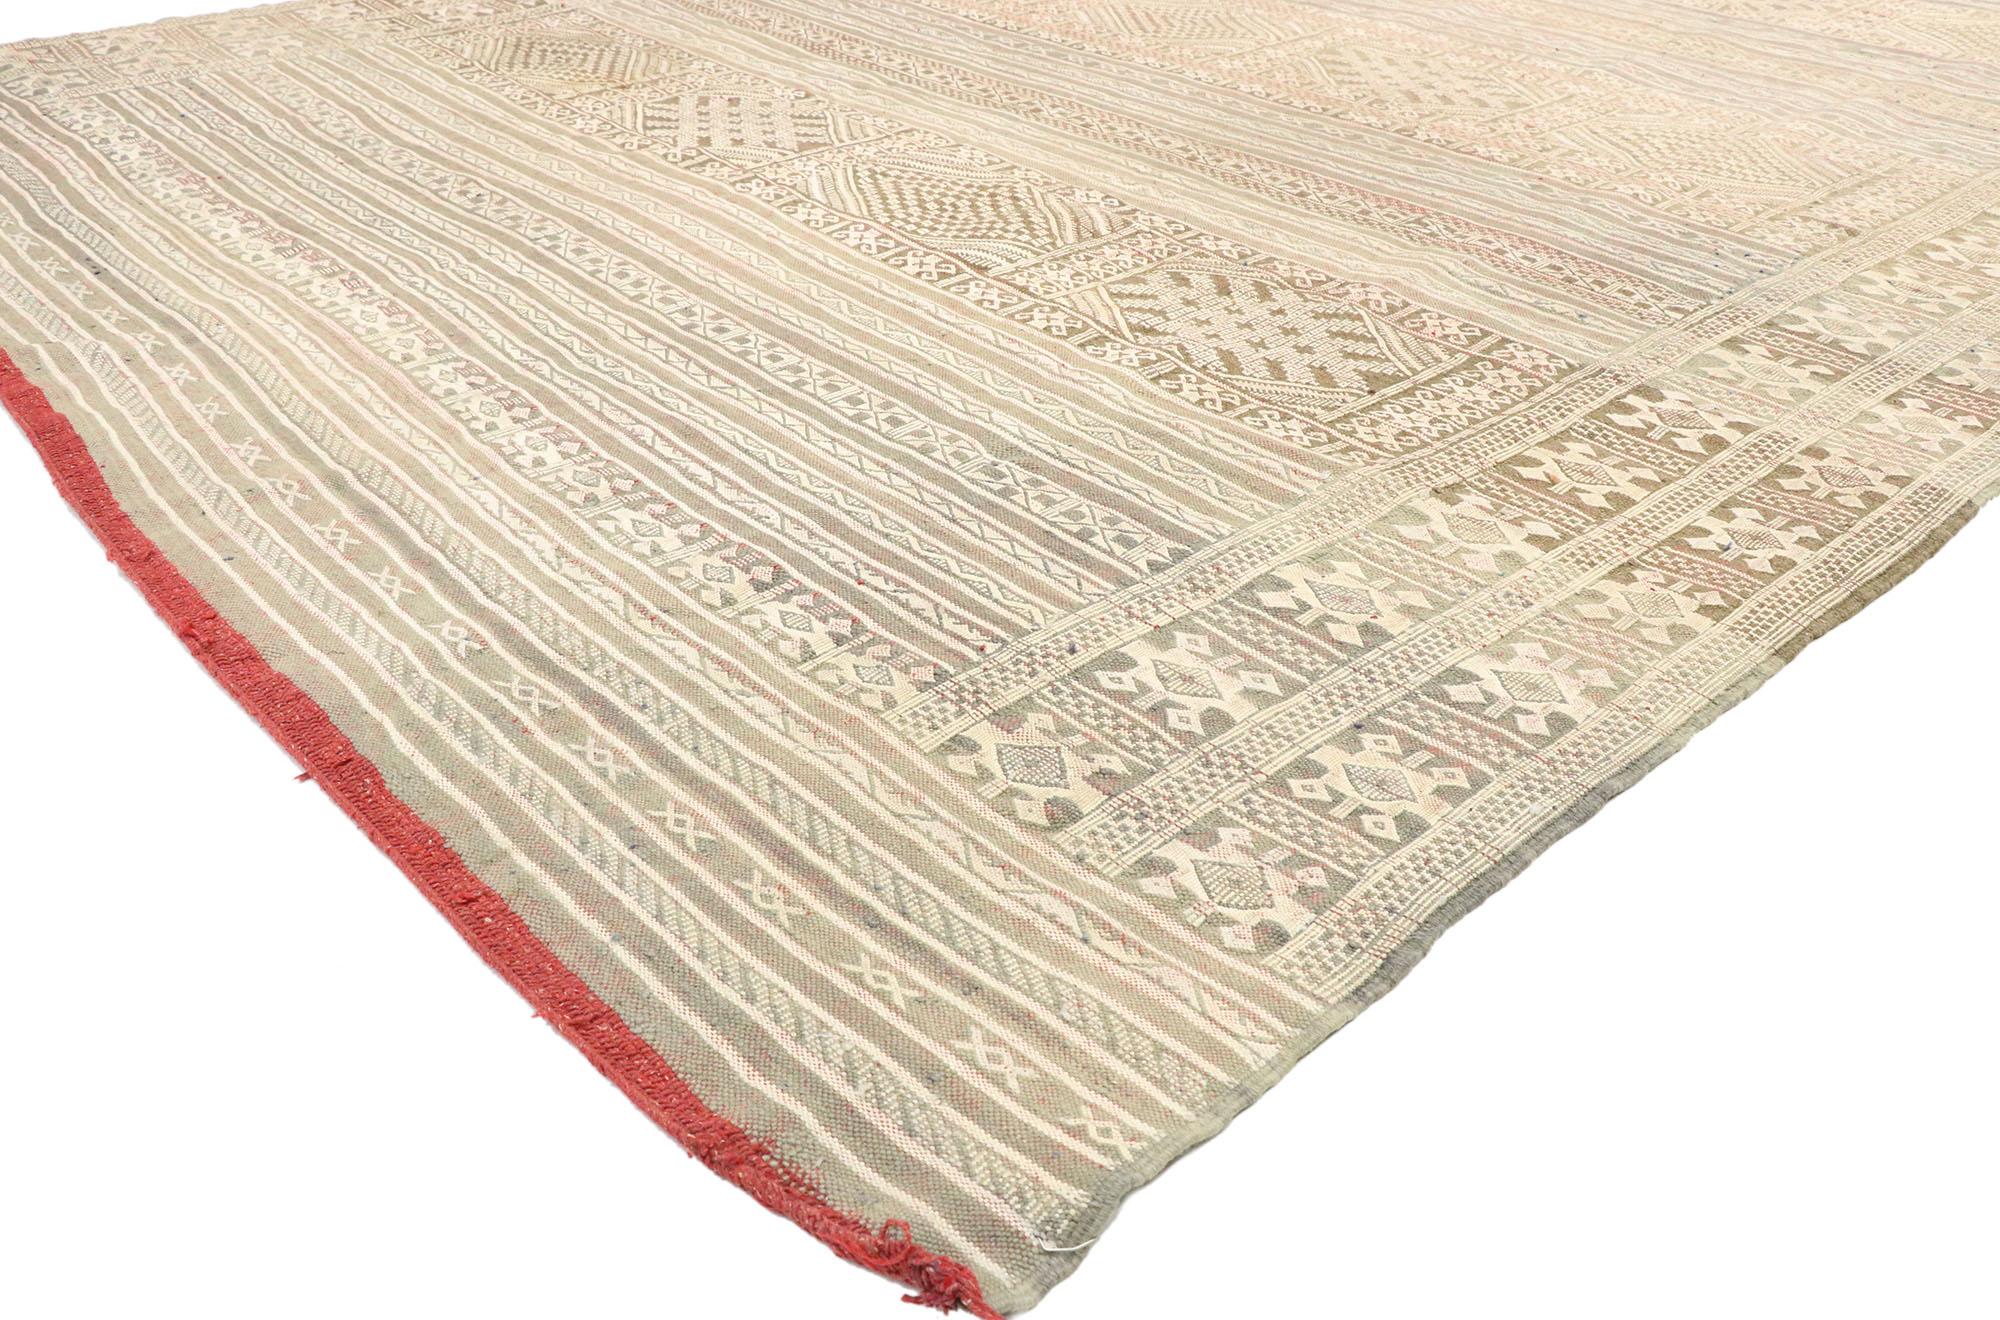 20782, marokkanischer Zemmour Berber-Kilim-Teppich im Bohemian Tribal-Stil. Dieser handgewebte marokkanische Zemmour Berber-Kilim-Teppich aus Wolle weist ein geometrisches Muster auf. Es zeigt abwechselnde Reihen breiter Bänder und Streifen, die aus